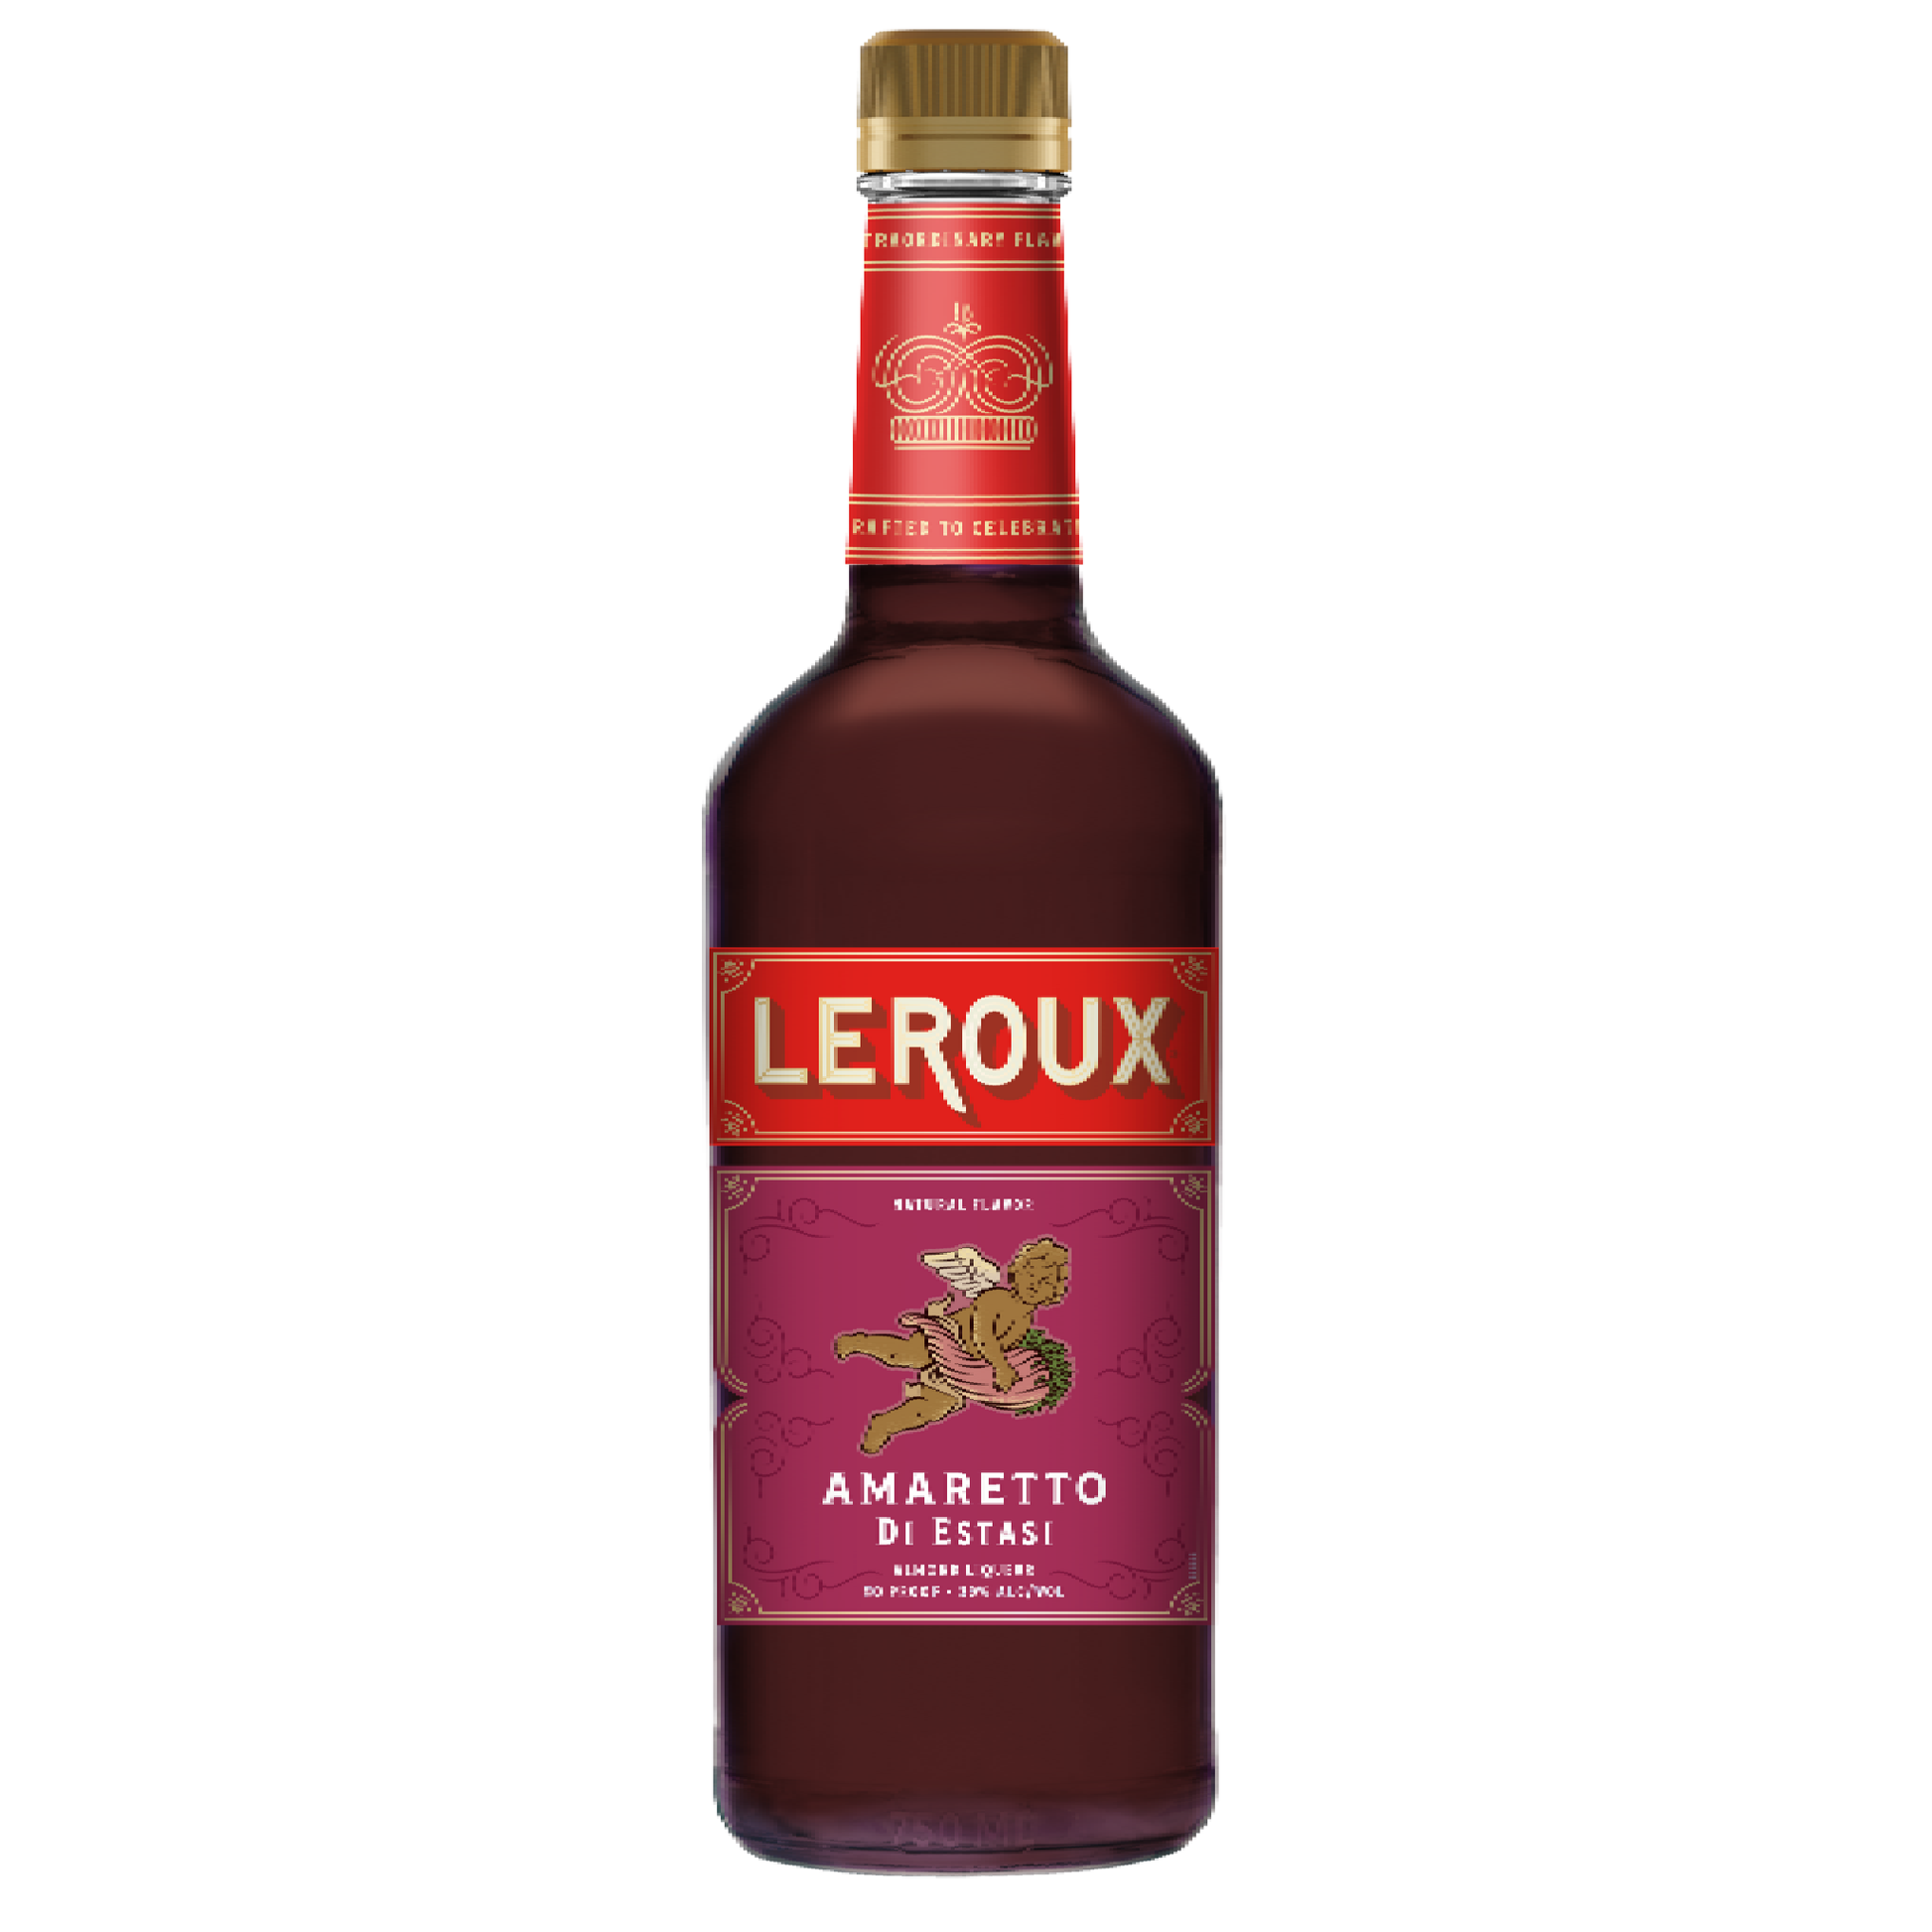 Leroux Amaretto Di Estasi - Liquor Geeks